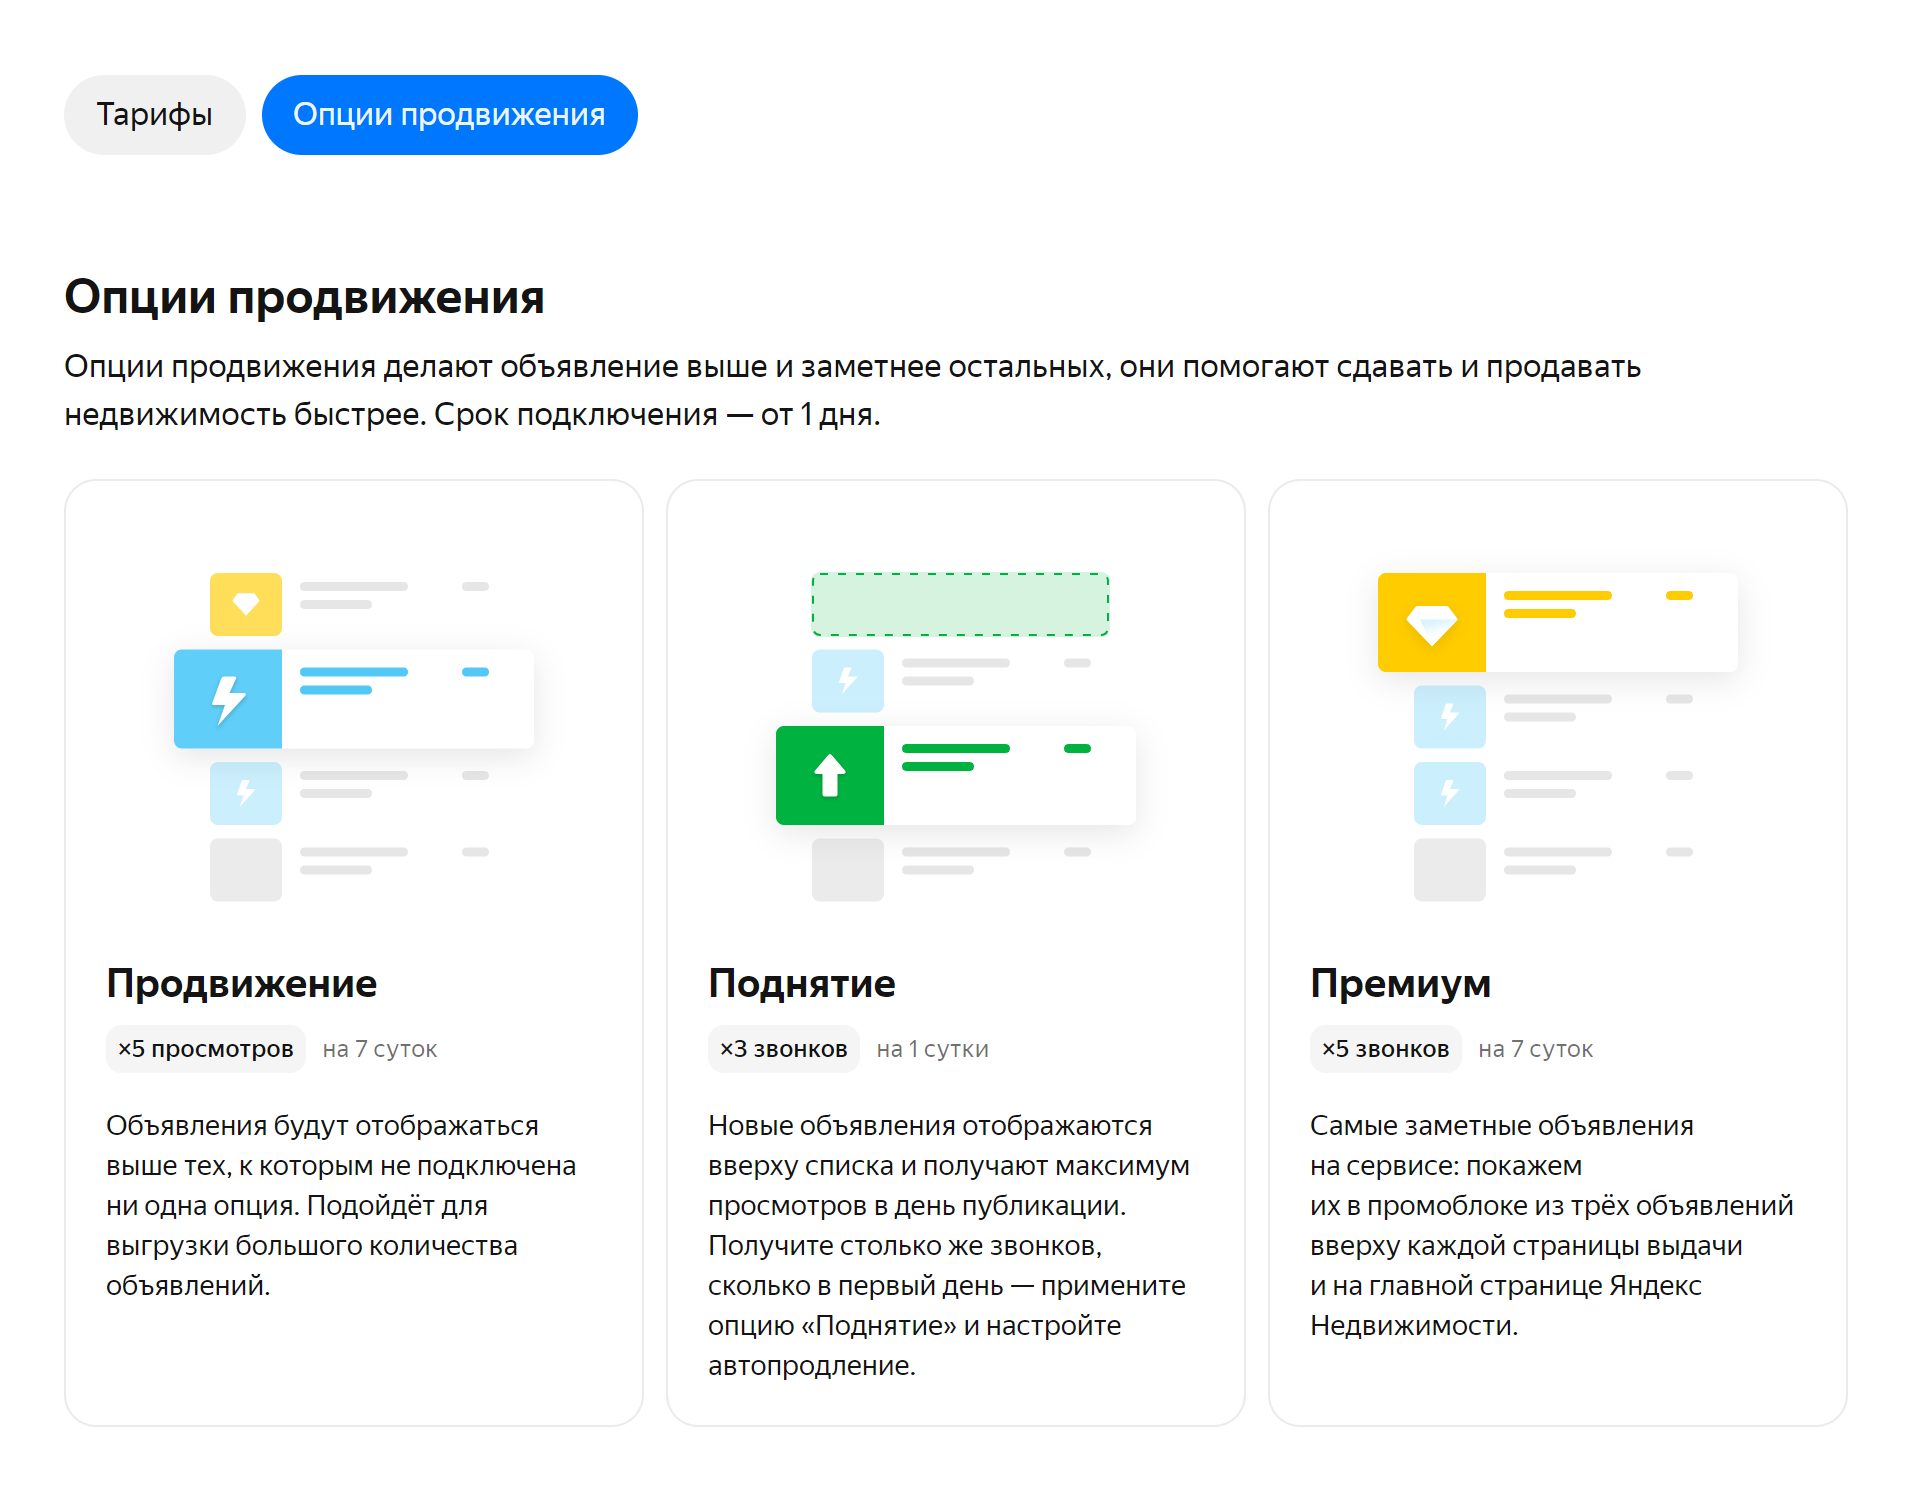 Пакеты продвижения объявления на портале «Яндекс-недвижимость». Источник: Яндекс⁠-⁠недвижимость